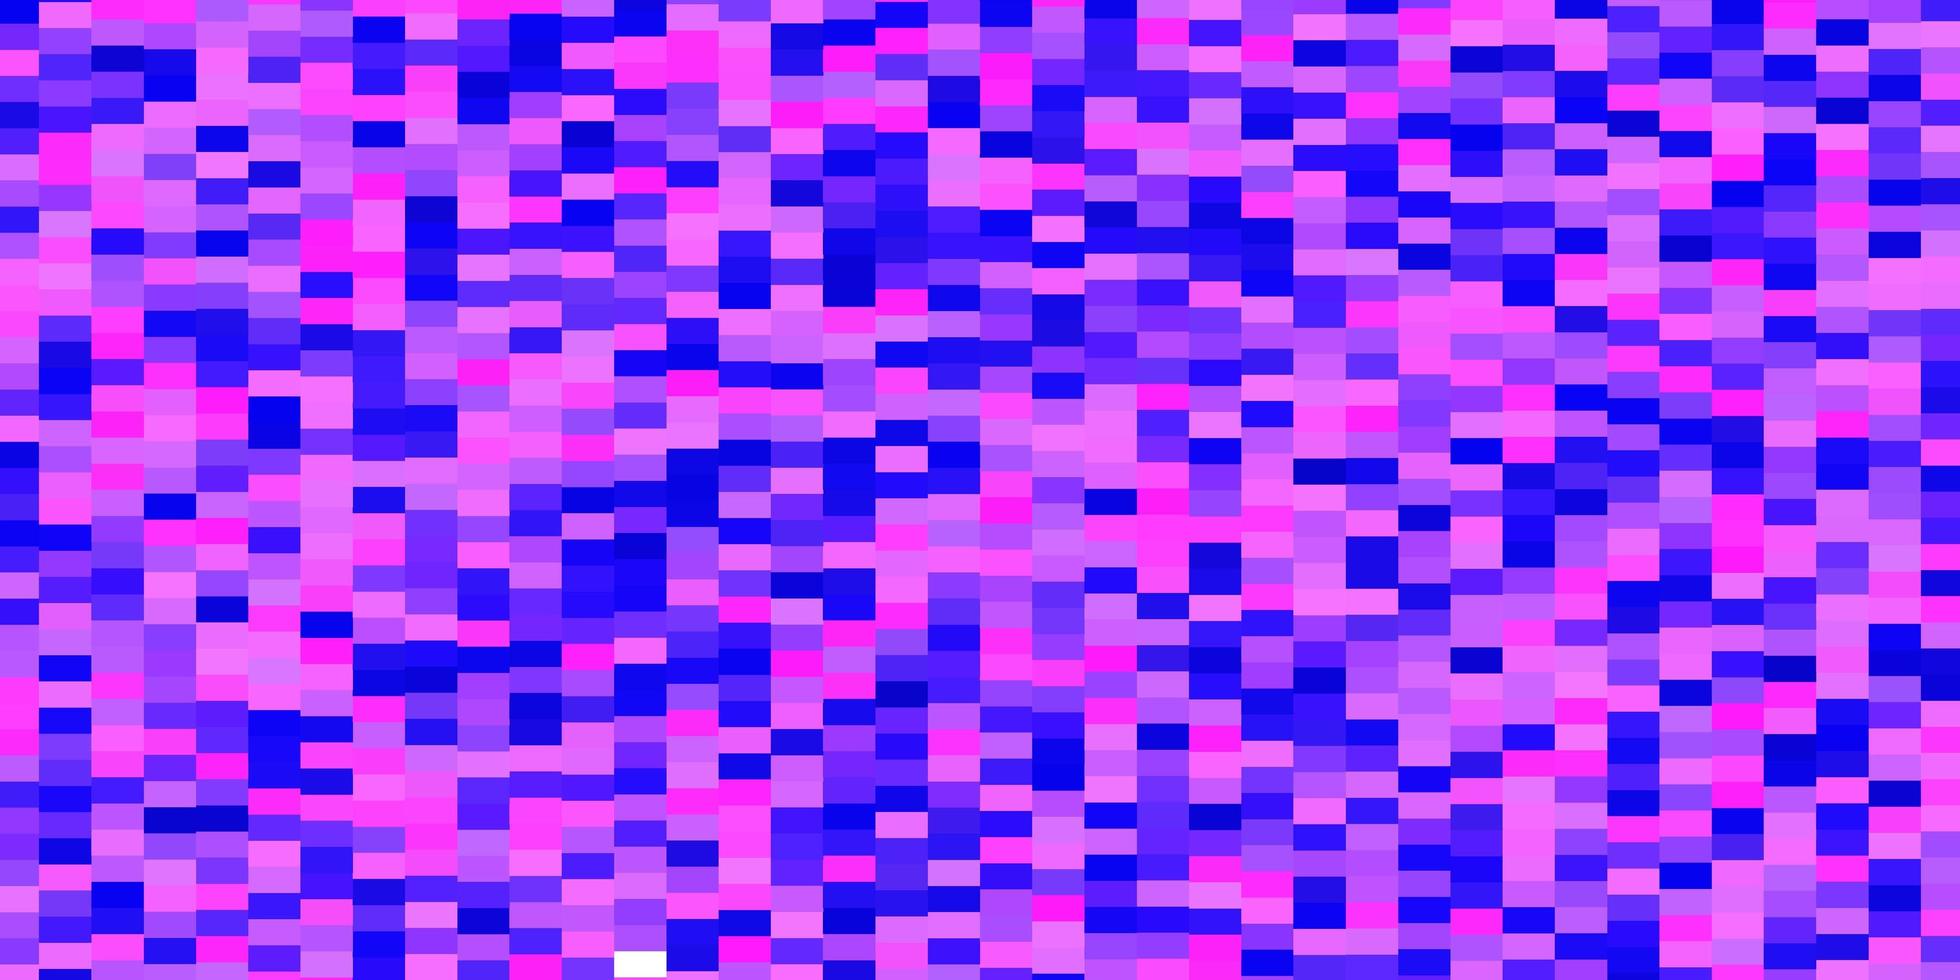 textura de vector azul rosa claro en ilustración colorida de estilo rectangular con rectángulos degradados y patrón de cuadrados para anuncios comerciales